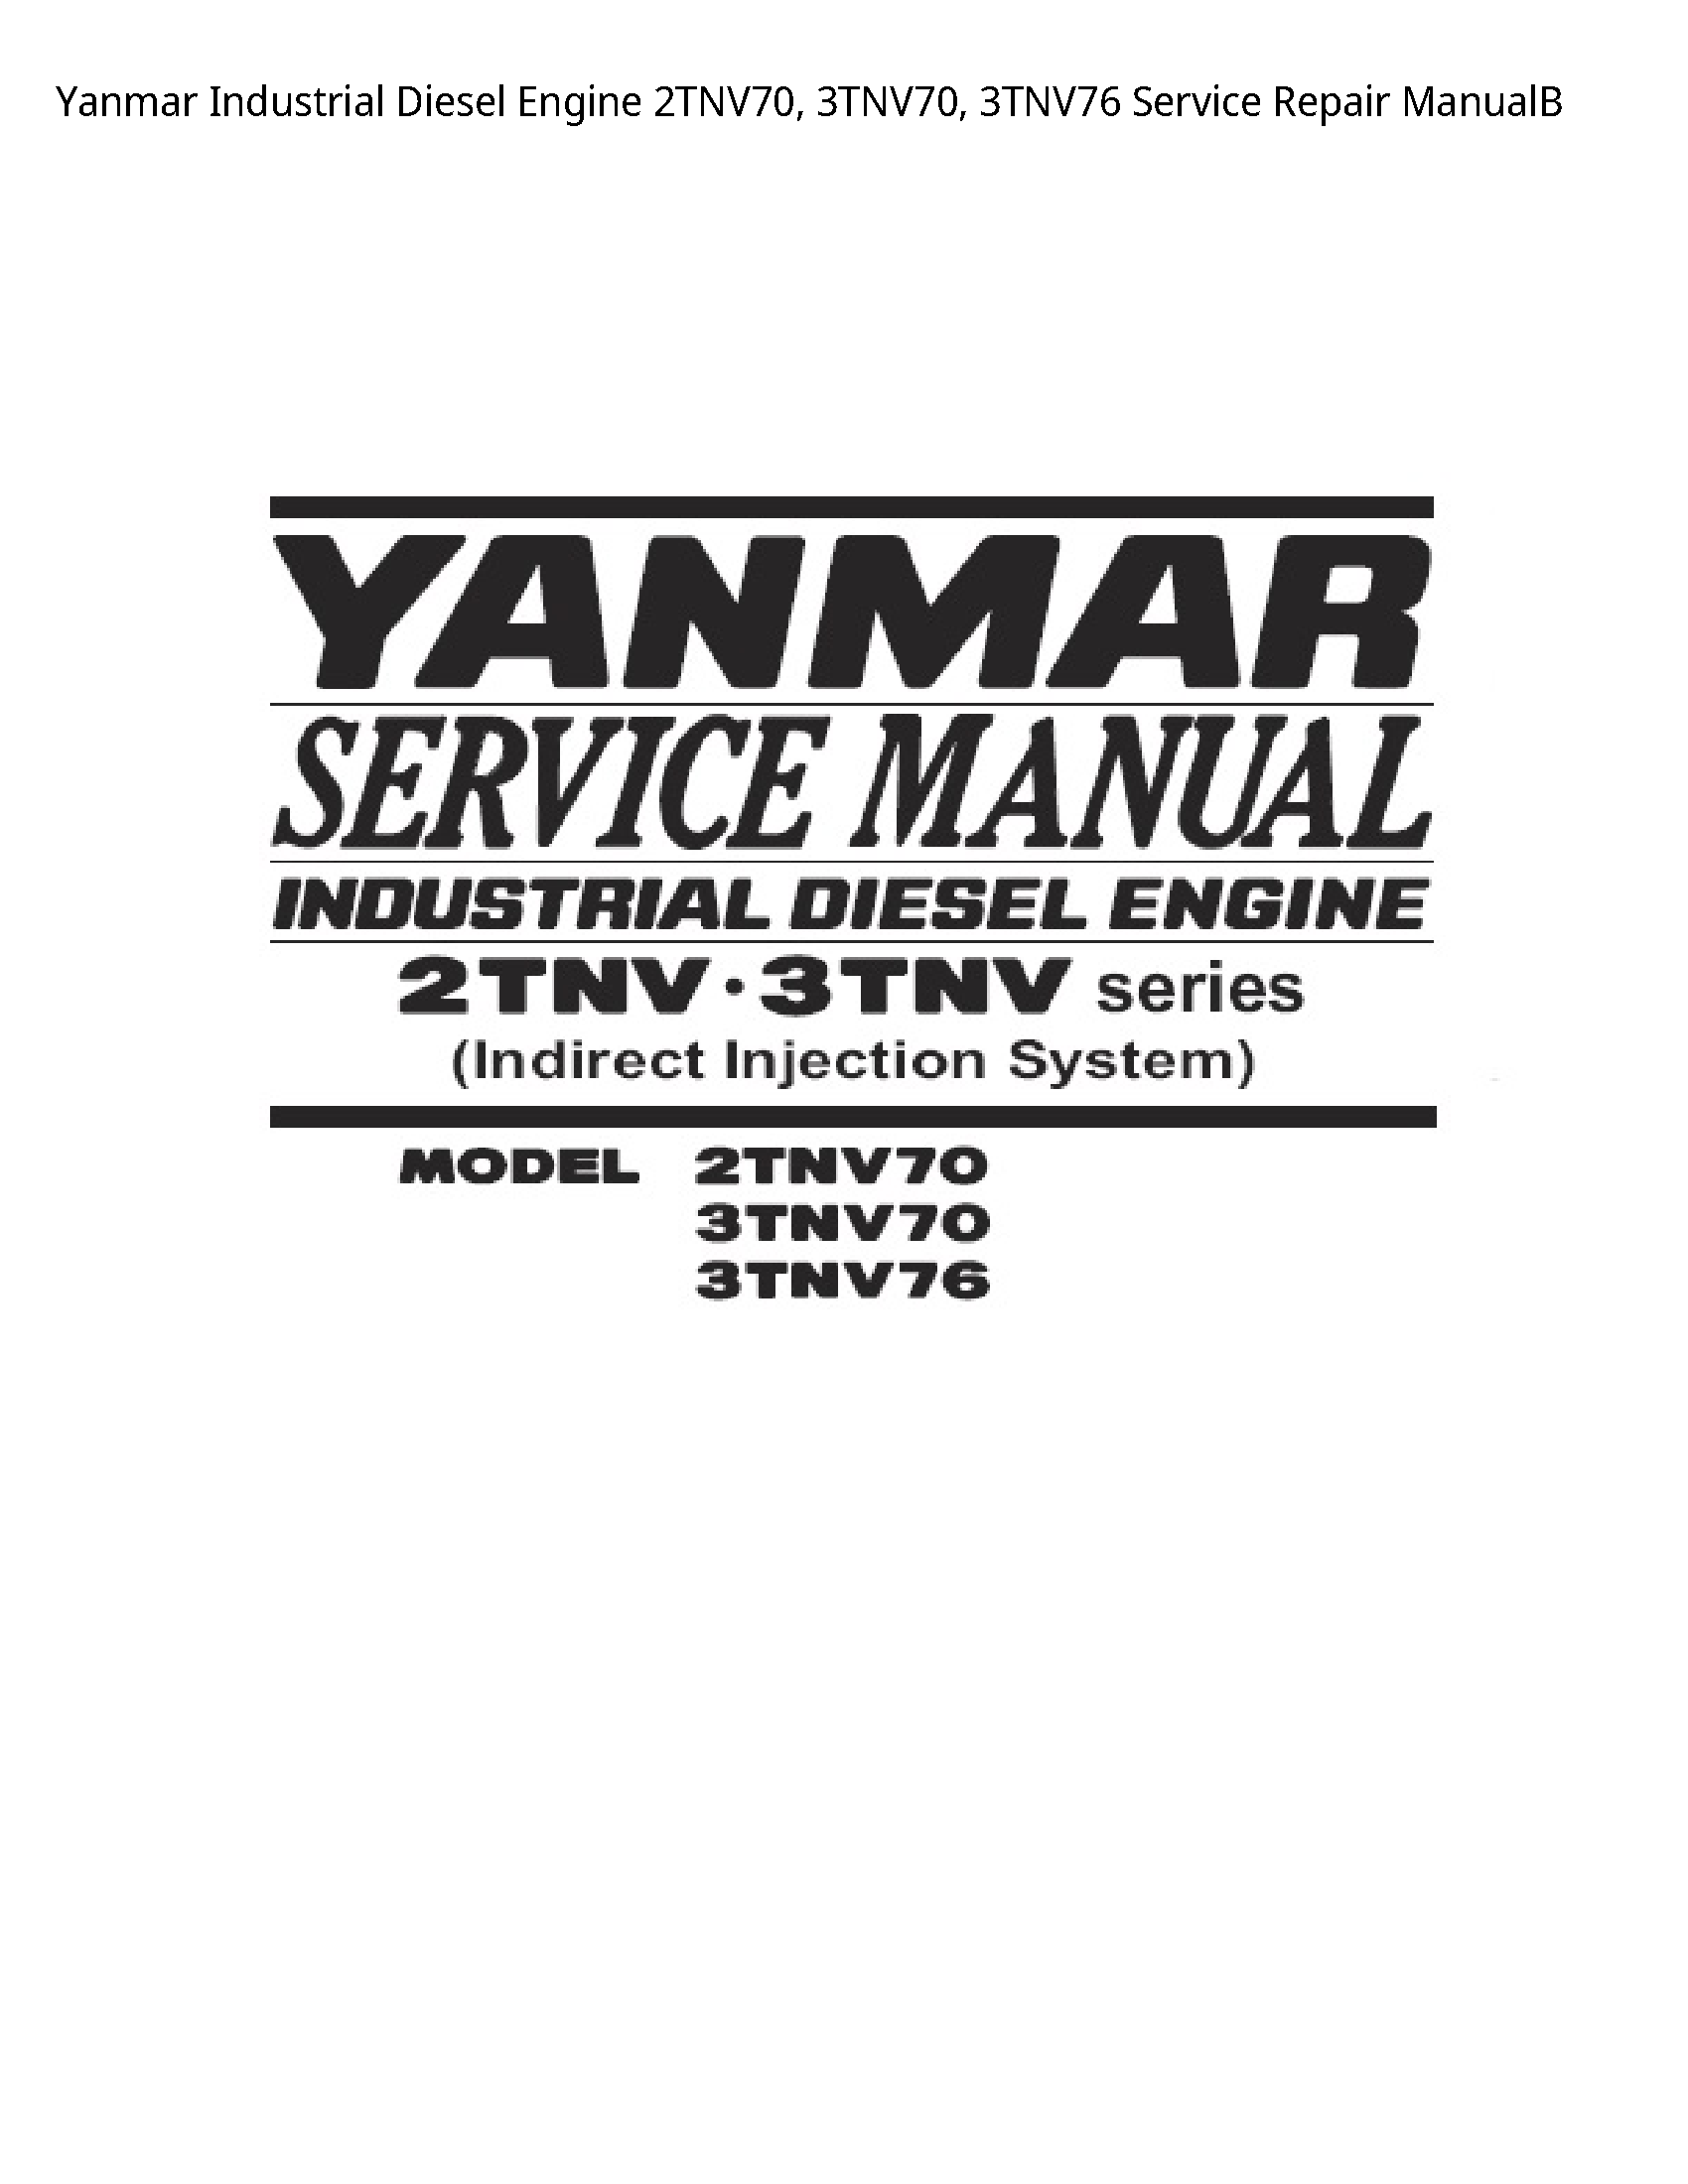 Yanmar 2TNV70 Industrial Diesel Engine manual